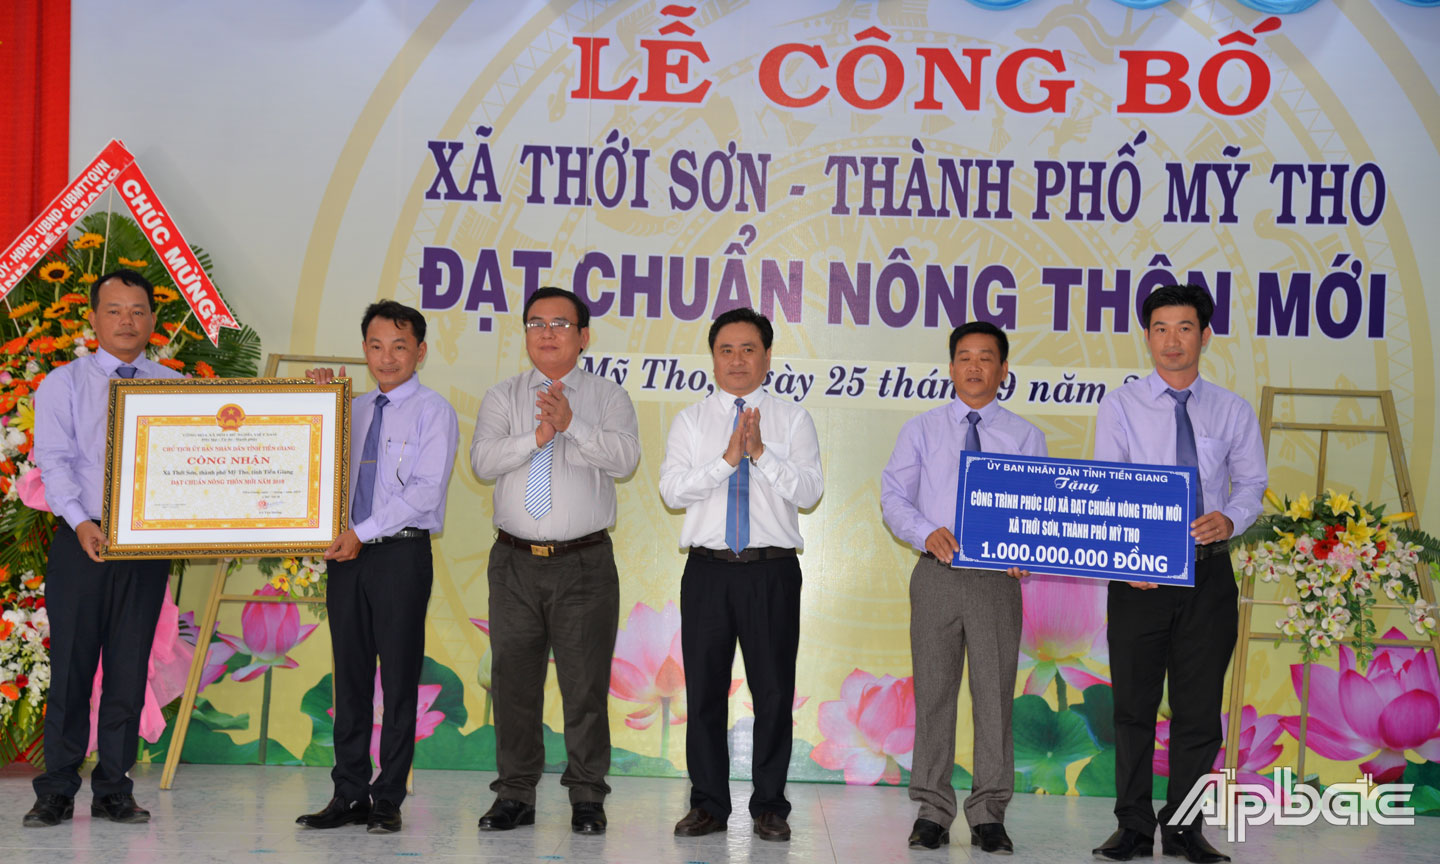 Đồng chí Võ Văn Bình và đồng chí Trần Văn Dũng trao Bằng công nhận  và Bảng tượng trưng tặng công trình phúc lợi 1 tỷ đồng cho xã NTM Thới Sơn.